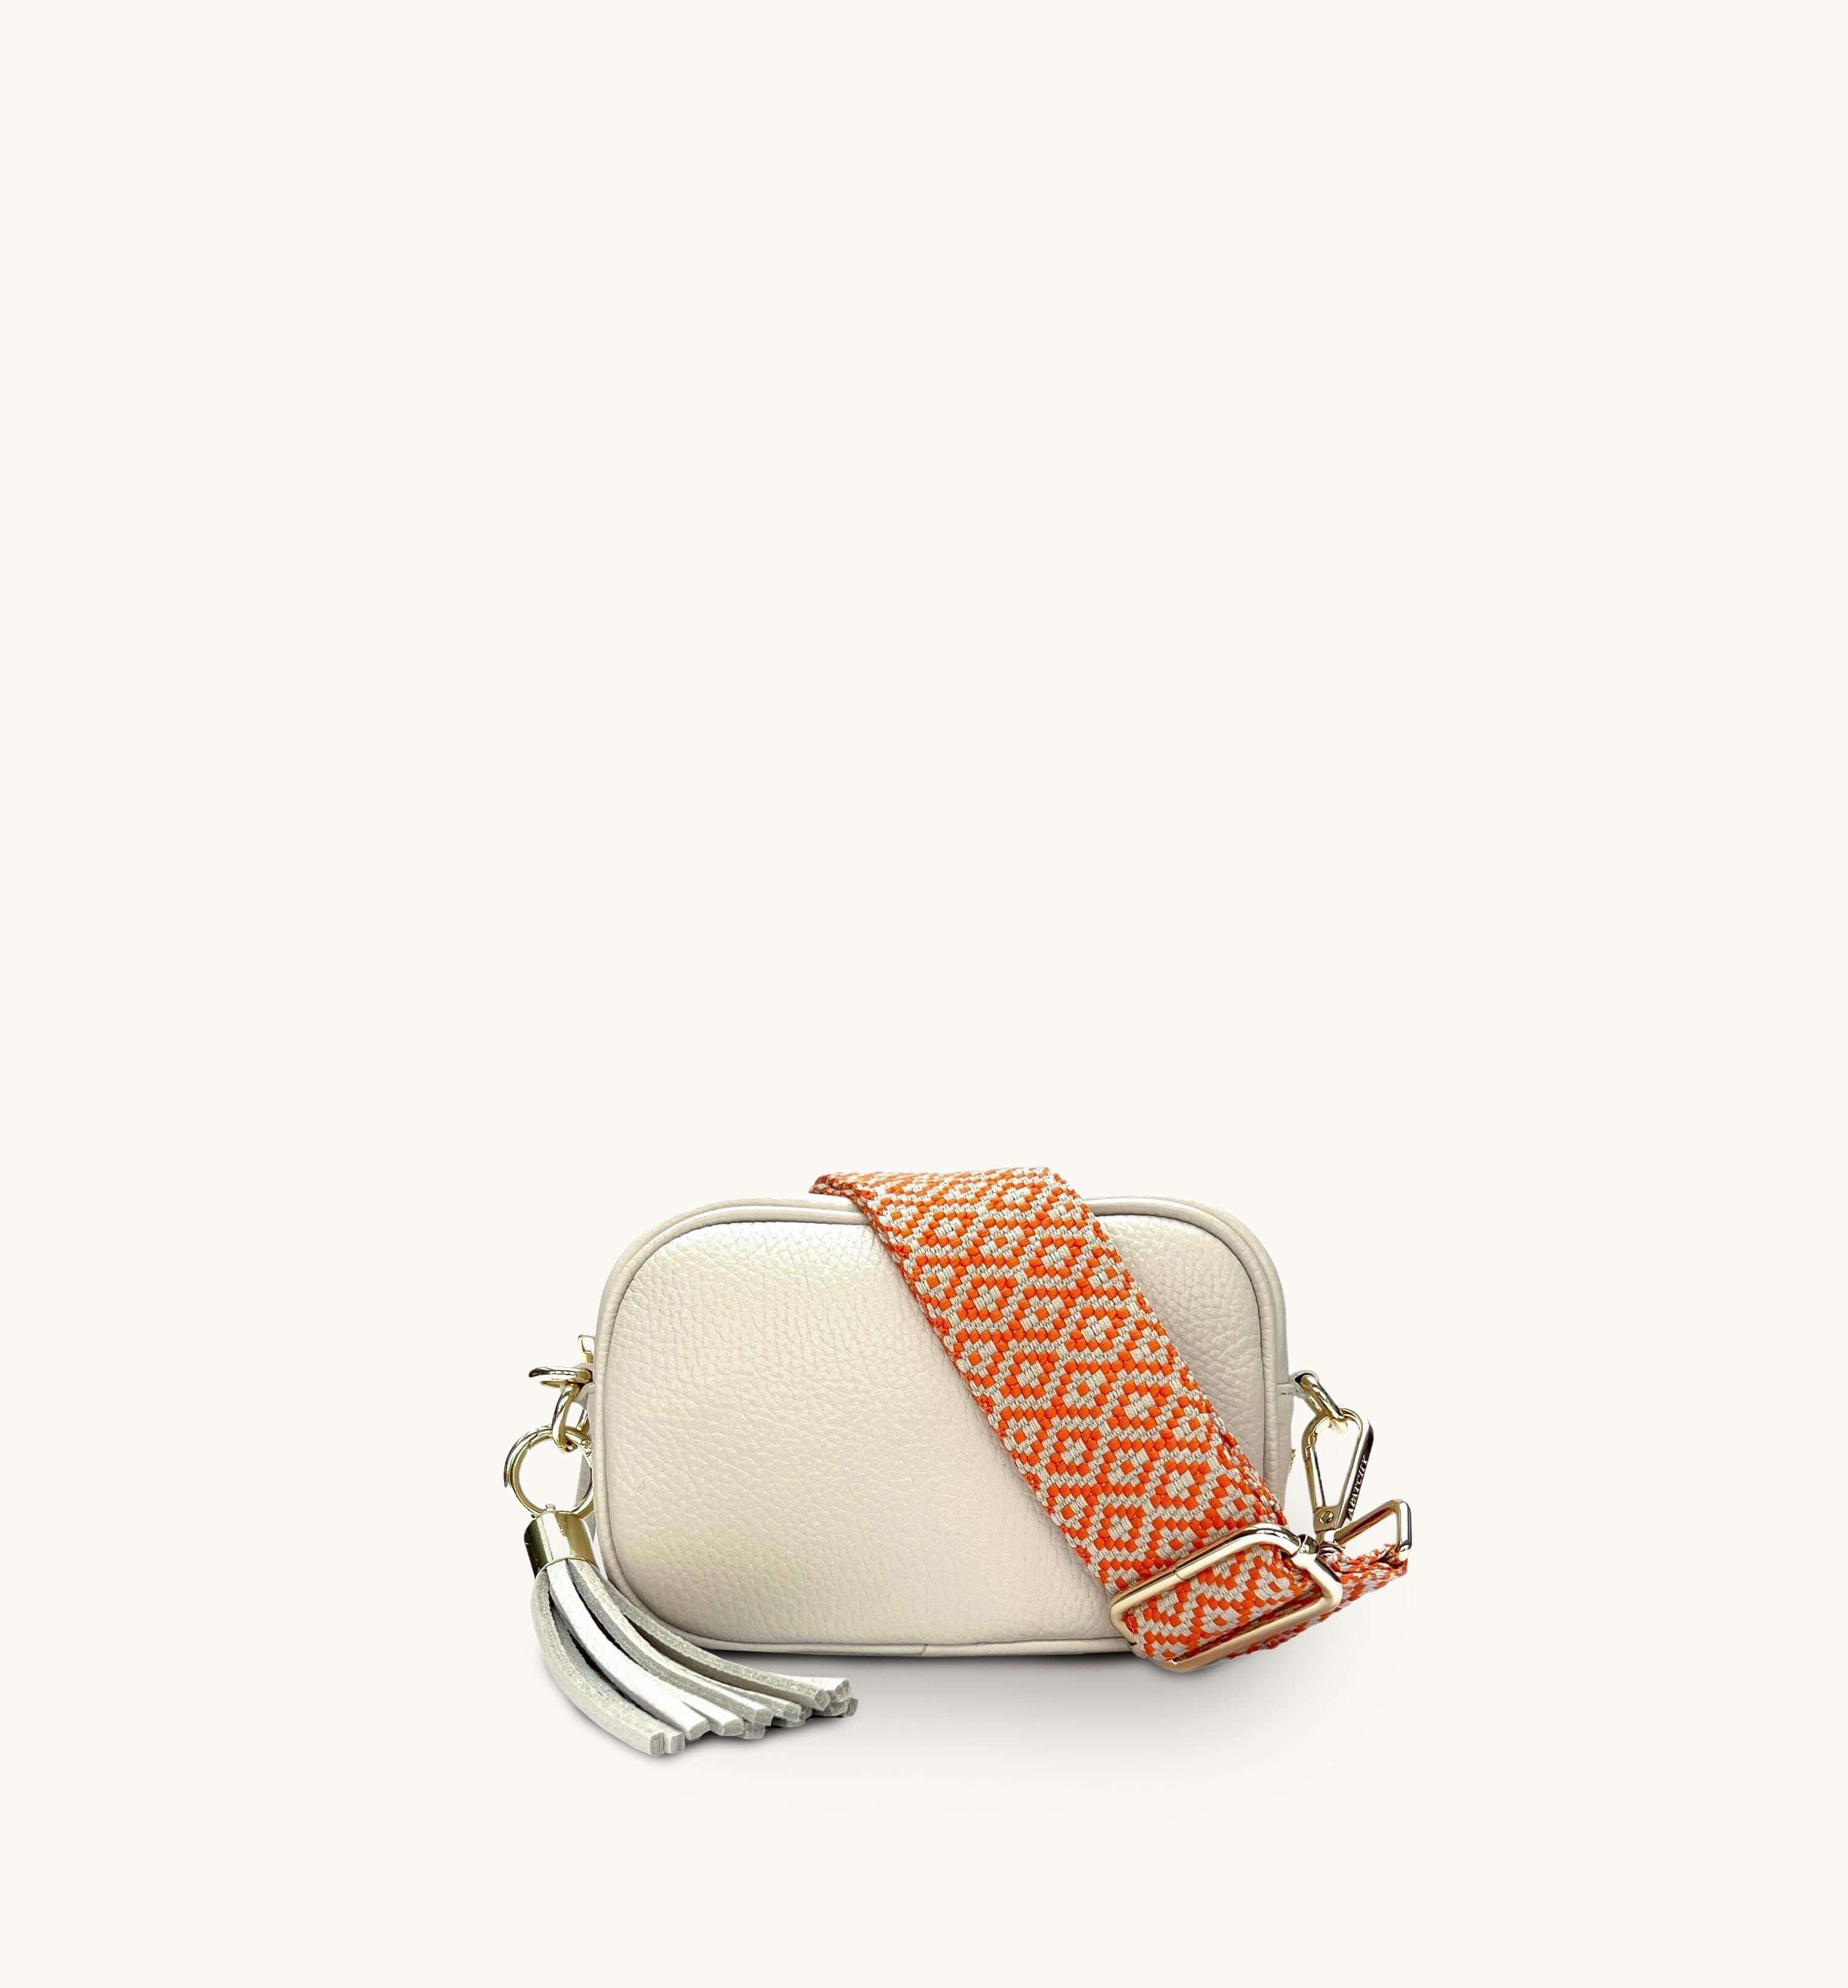 Кожаная сумка для телефона Mini с кисточками и оранжевым ремешком с вышивкой крестиком Apatchy London, бежевый